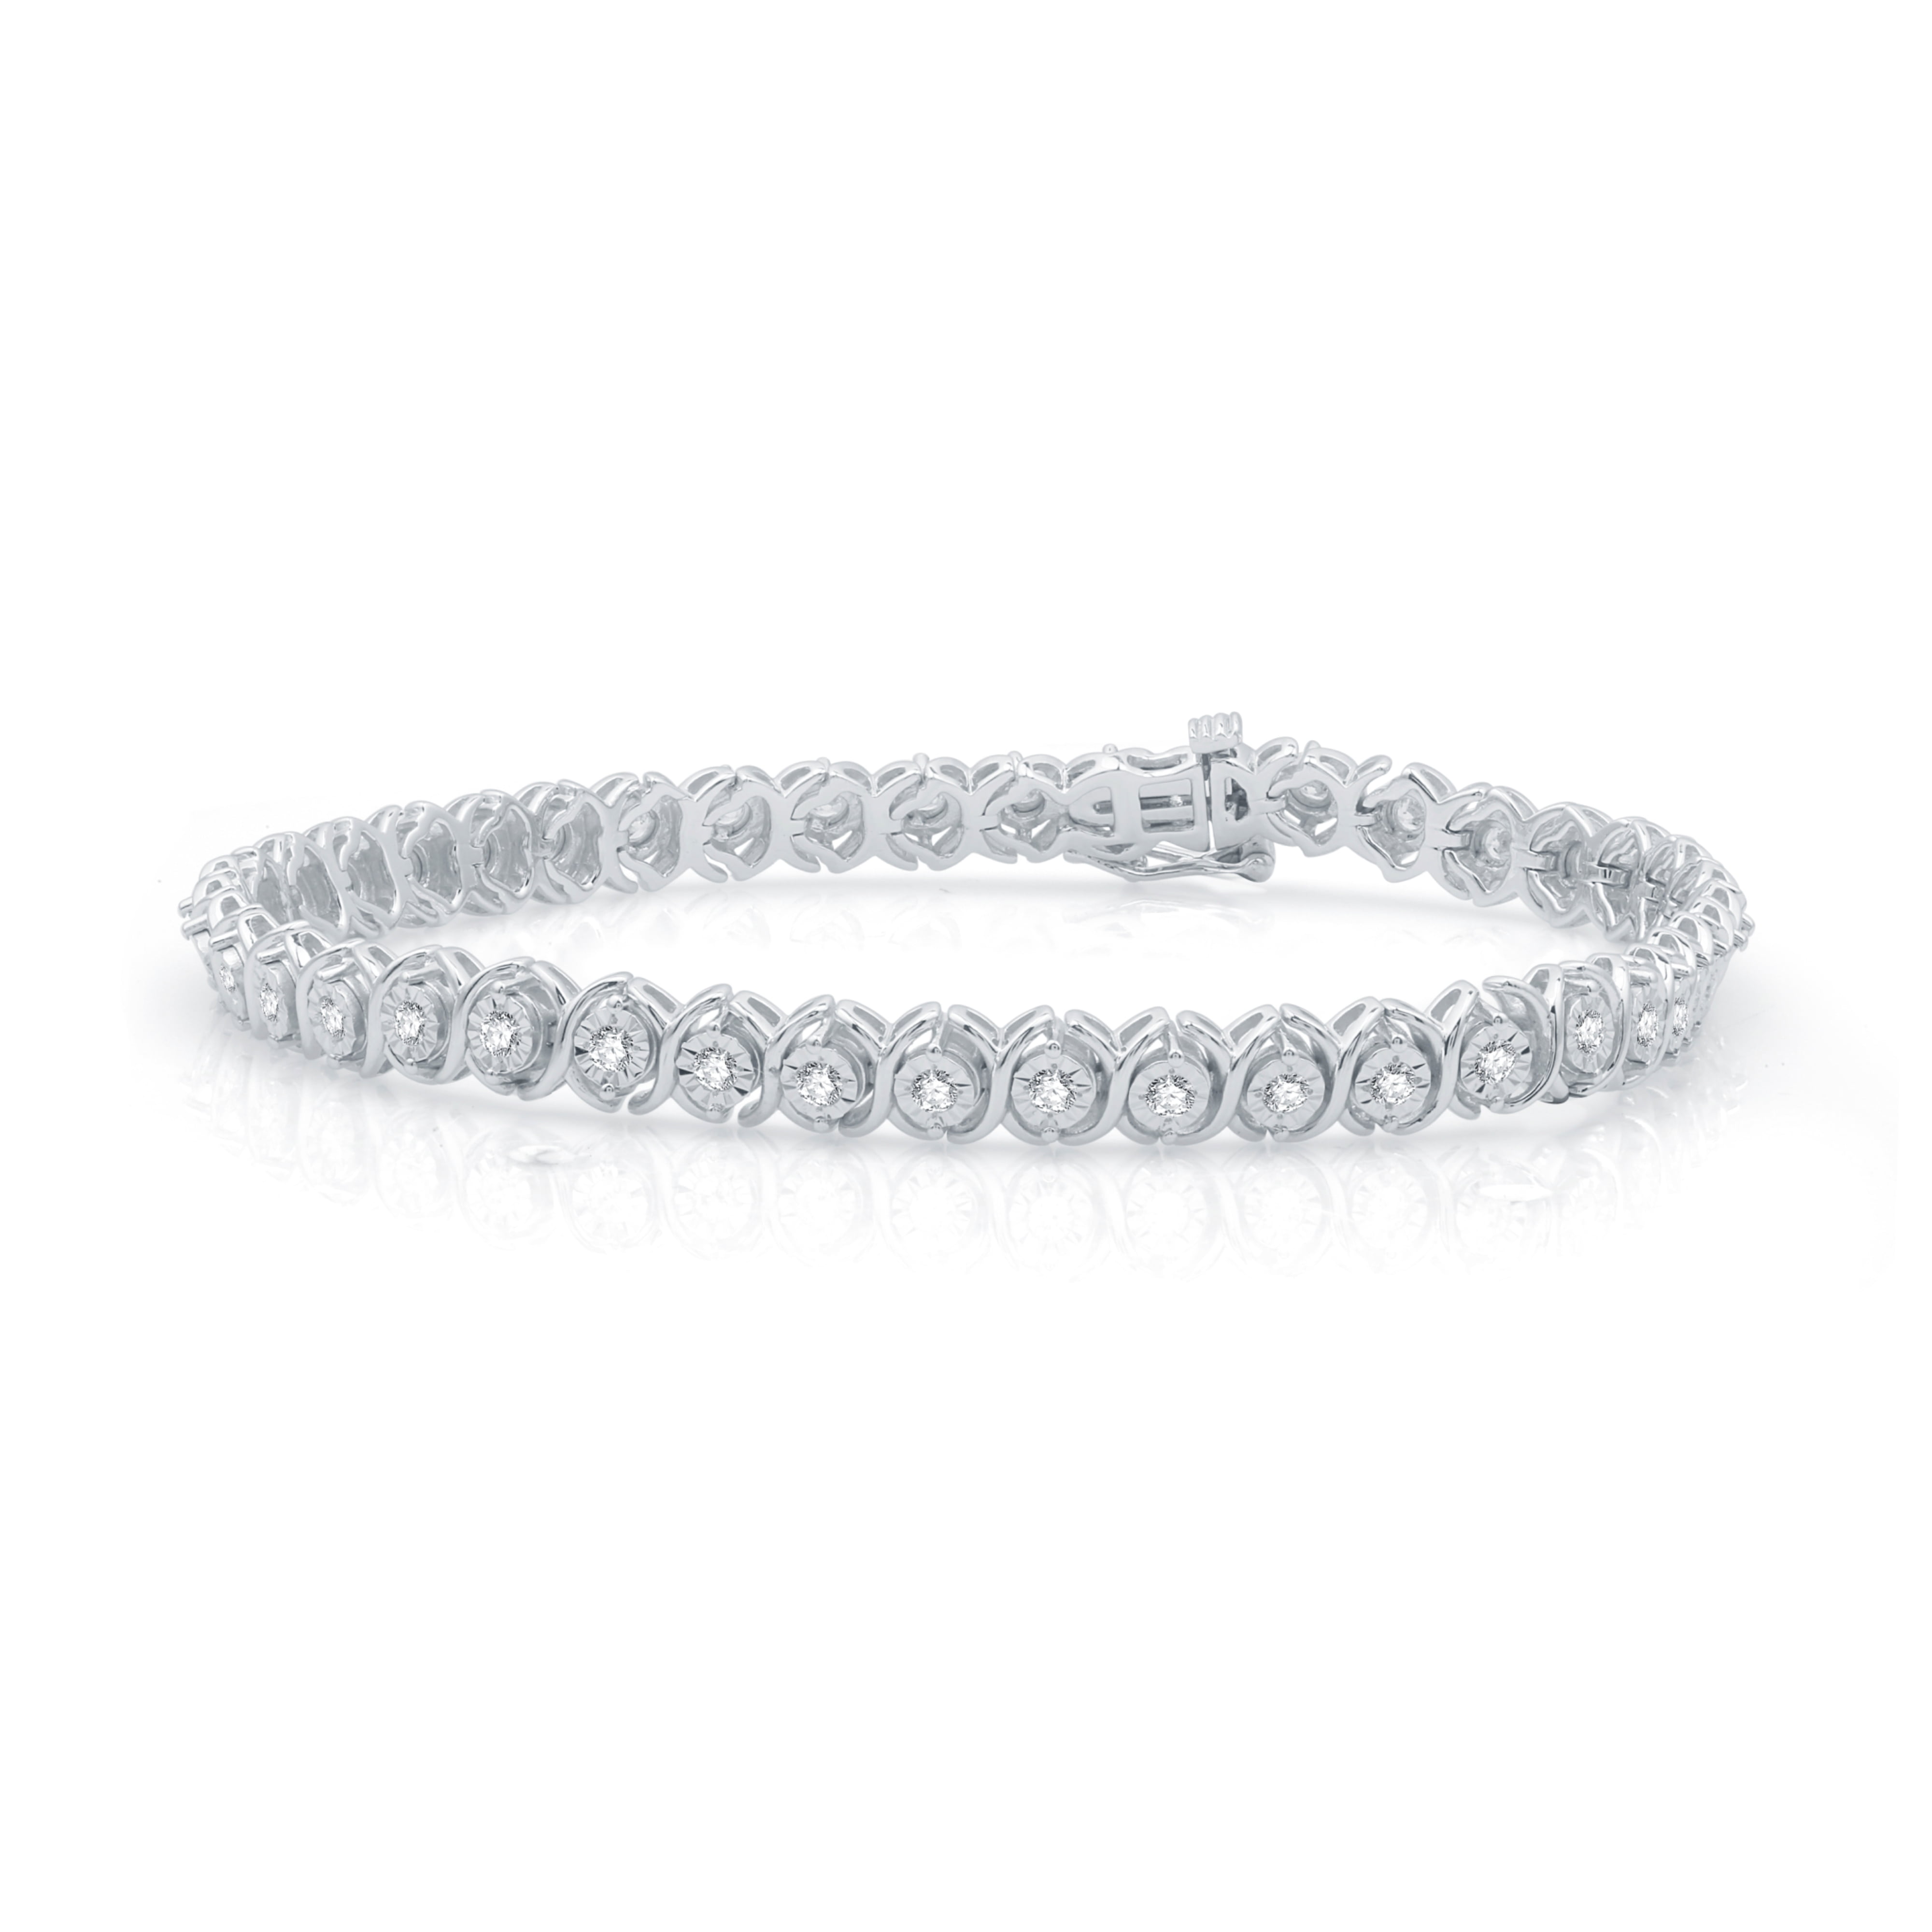 Buy Rose Gold Round Diamond Tennis Bracelet for Women – Ayaani